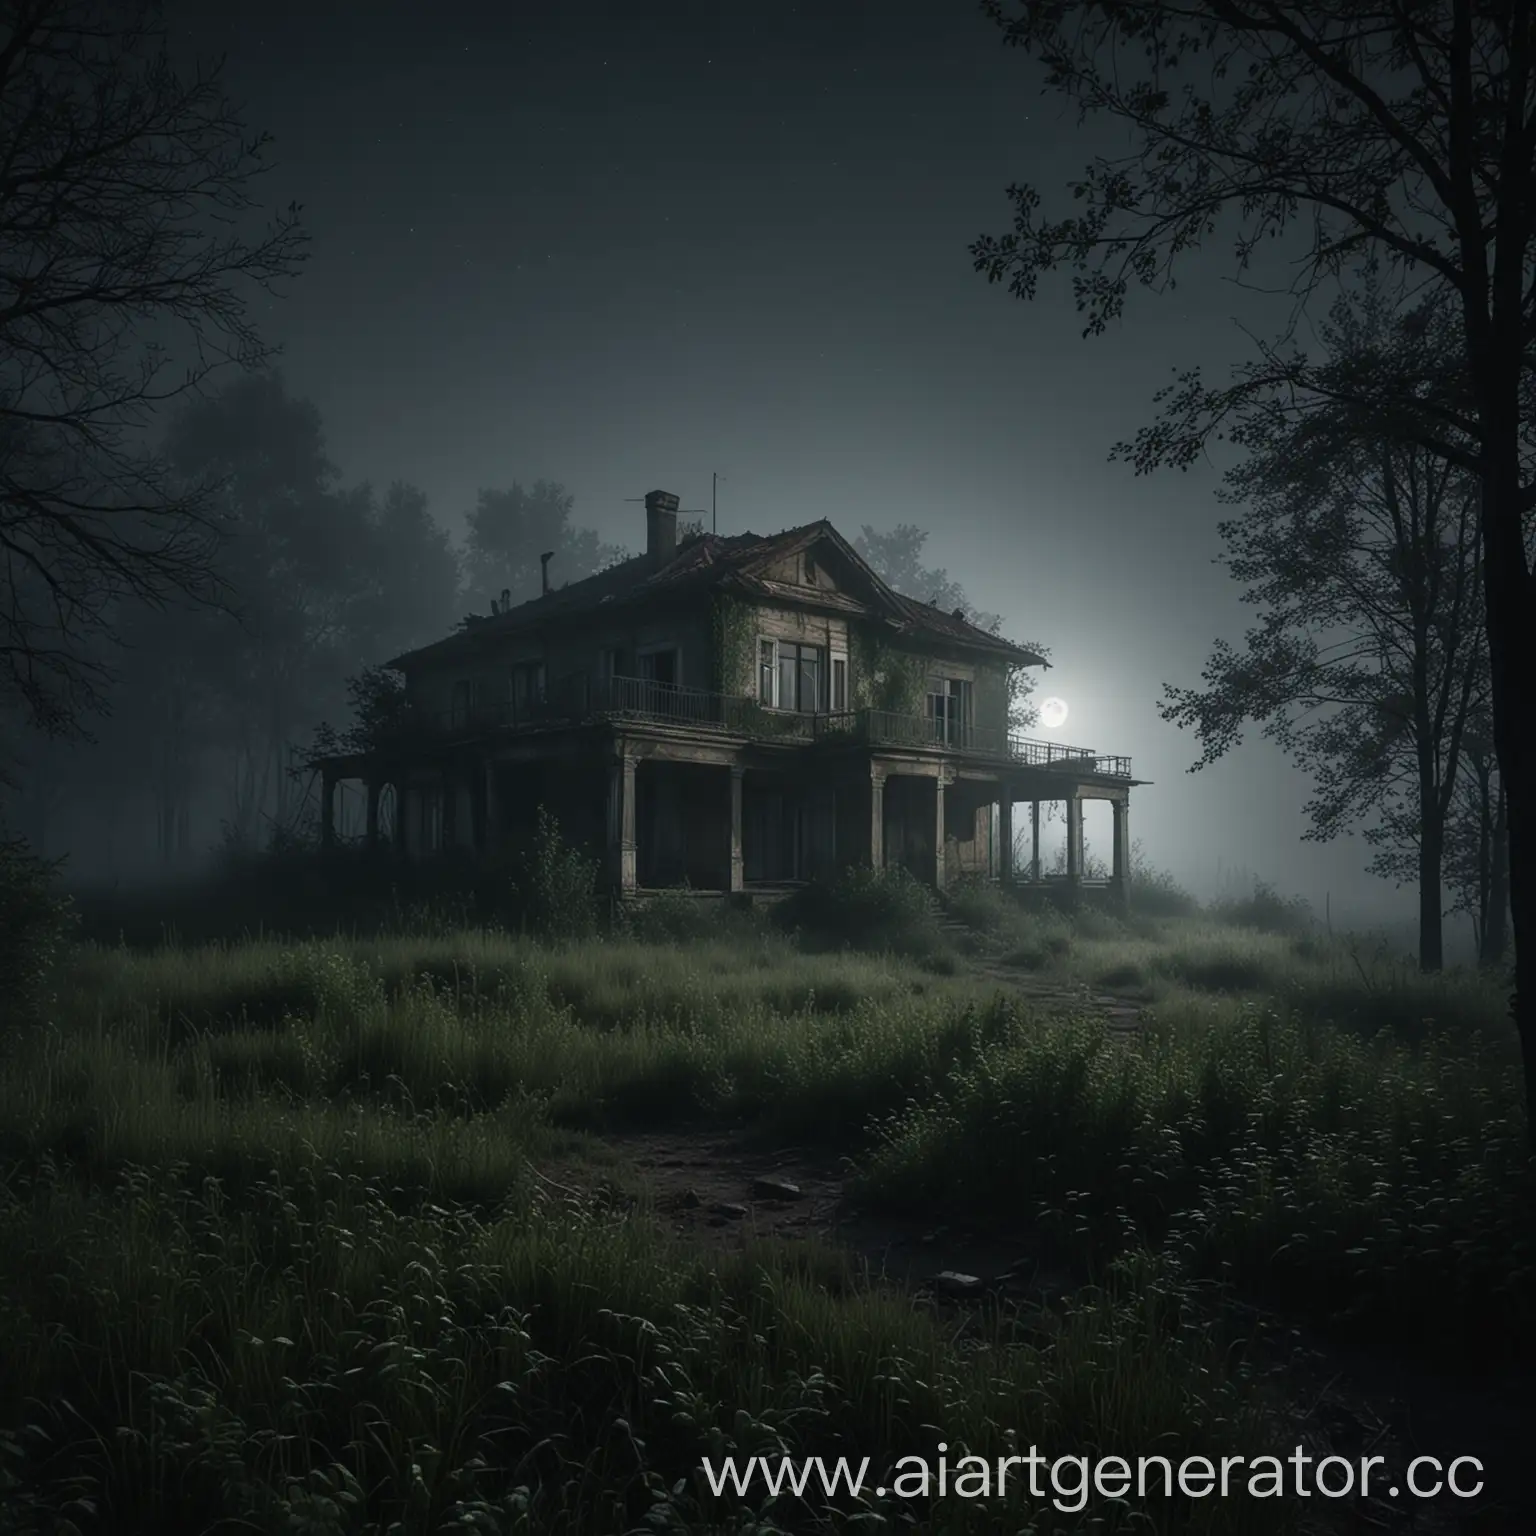 заброшенный старый одноэтажный
 домик в лесу, ночь, лучи света от луны, реализм, туман, камера вид из кустов